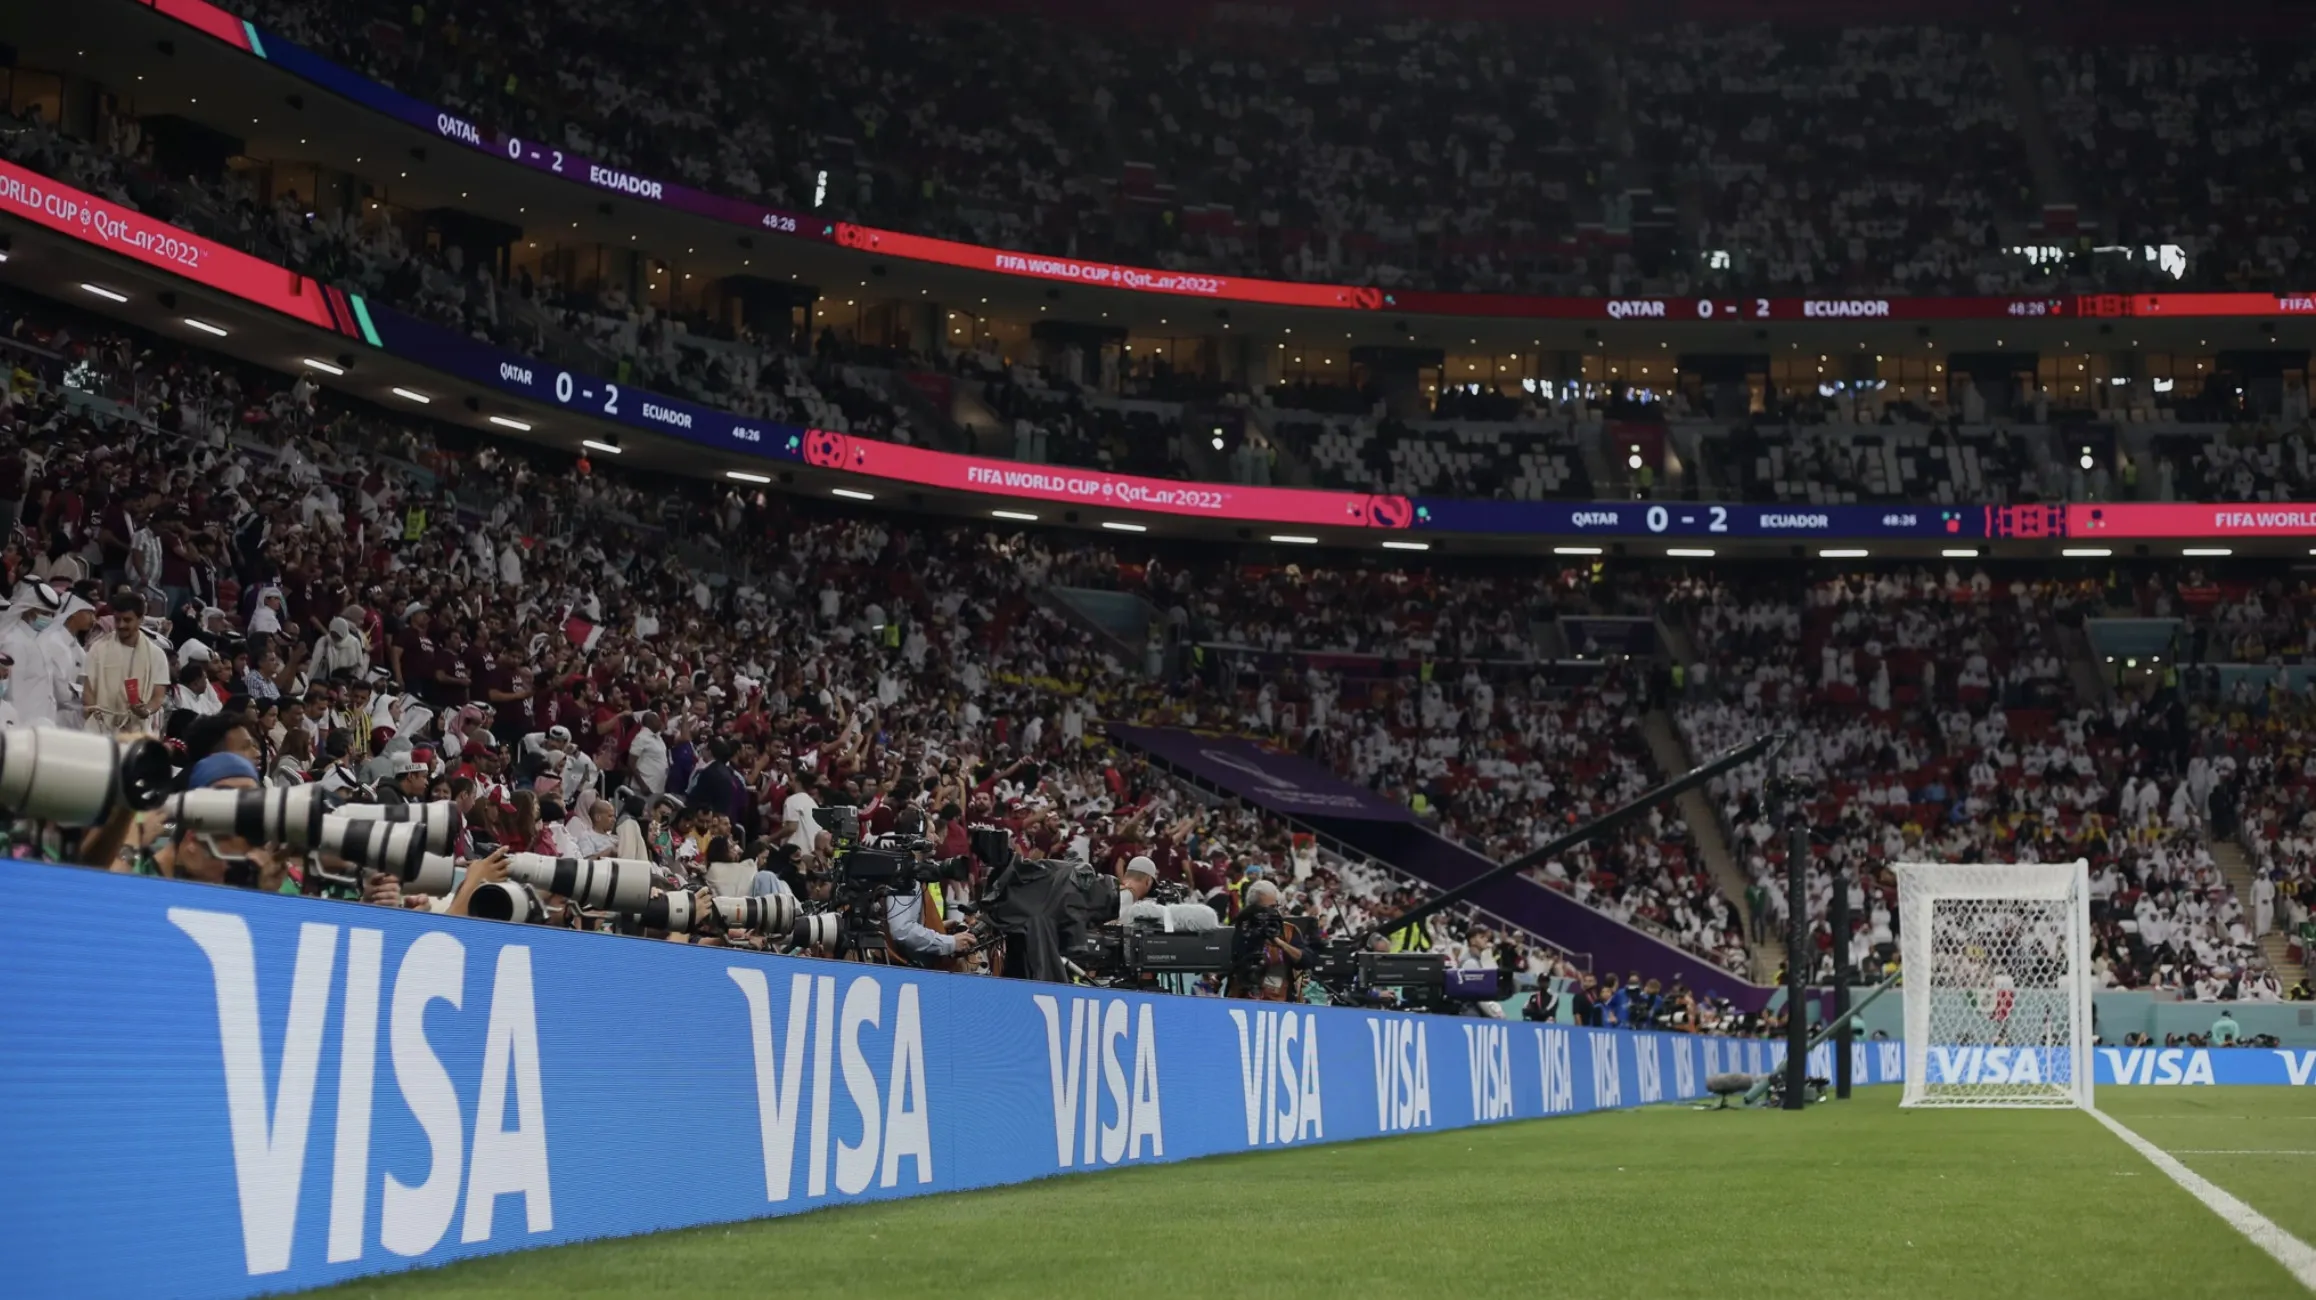 Visa cùng FIFA tiếp tục gia hạn chương trình đối tác toàn cầu, hướng tới FIFA World Cup 2026